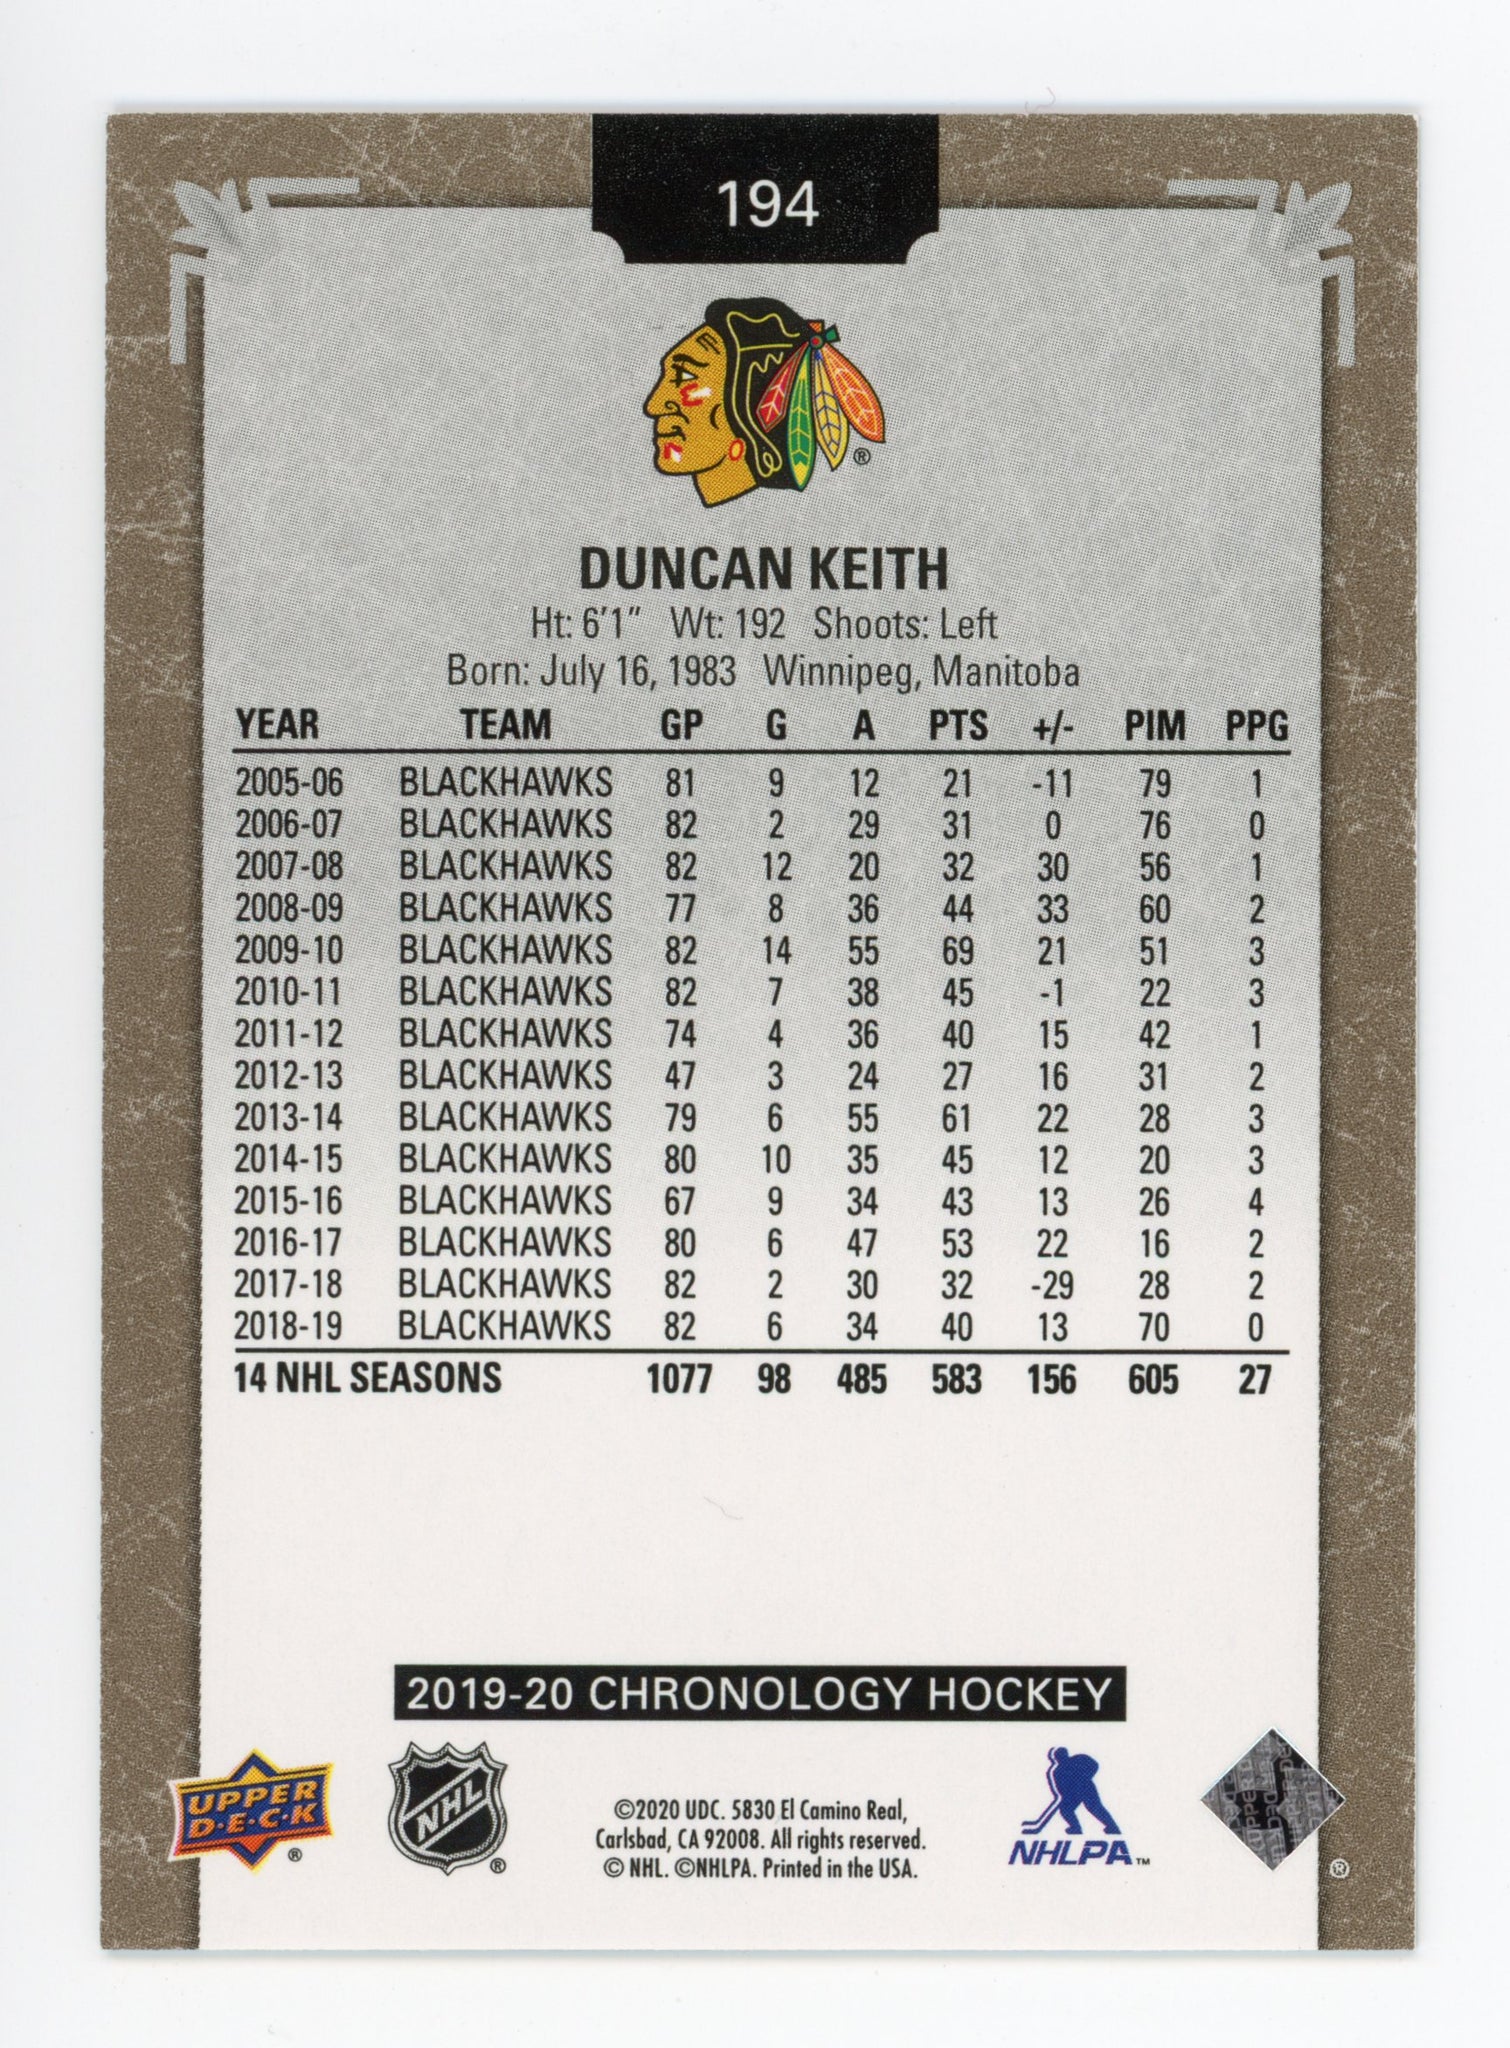 Duncan Keith Upper Deck Chronology #d /222 Chicago Blackhawks # 194